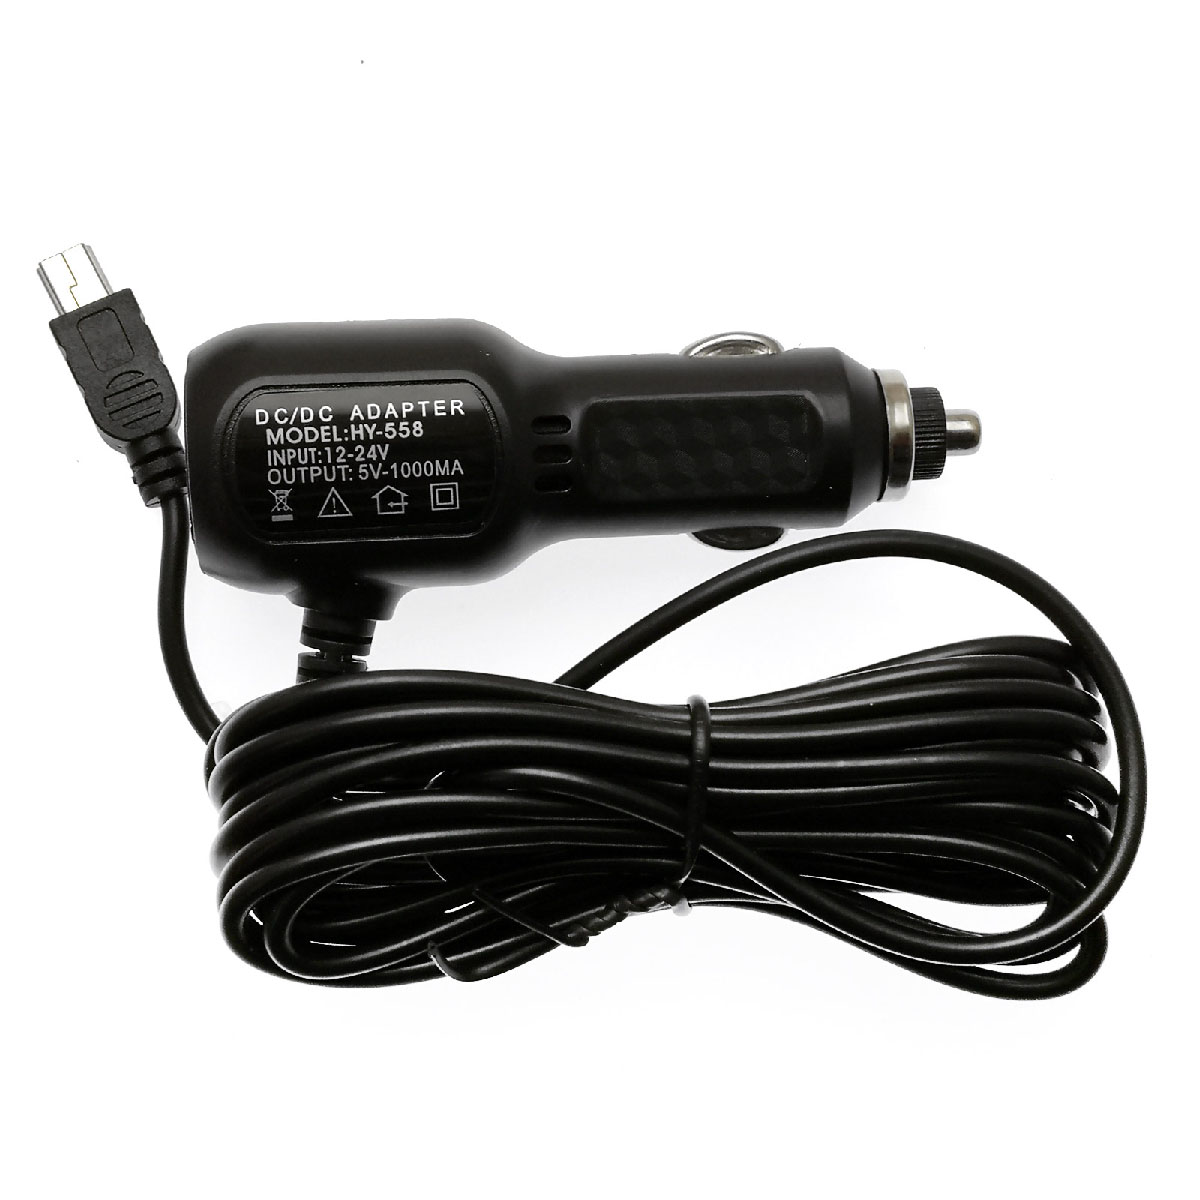 Автомобильный видеорегистратор Dash Cam T691 GPS трекер, цвет черный